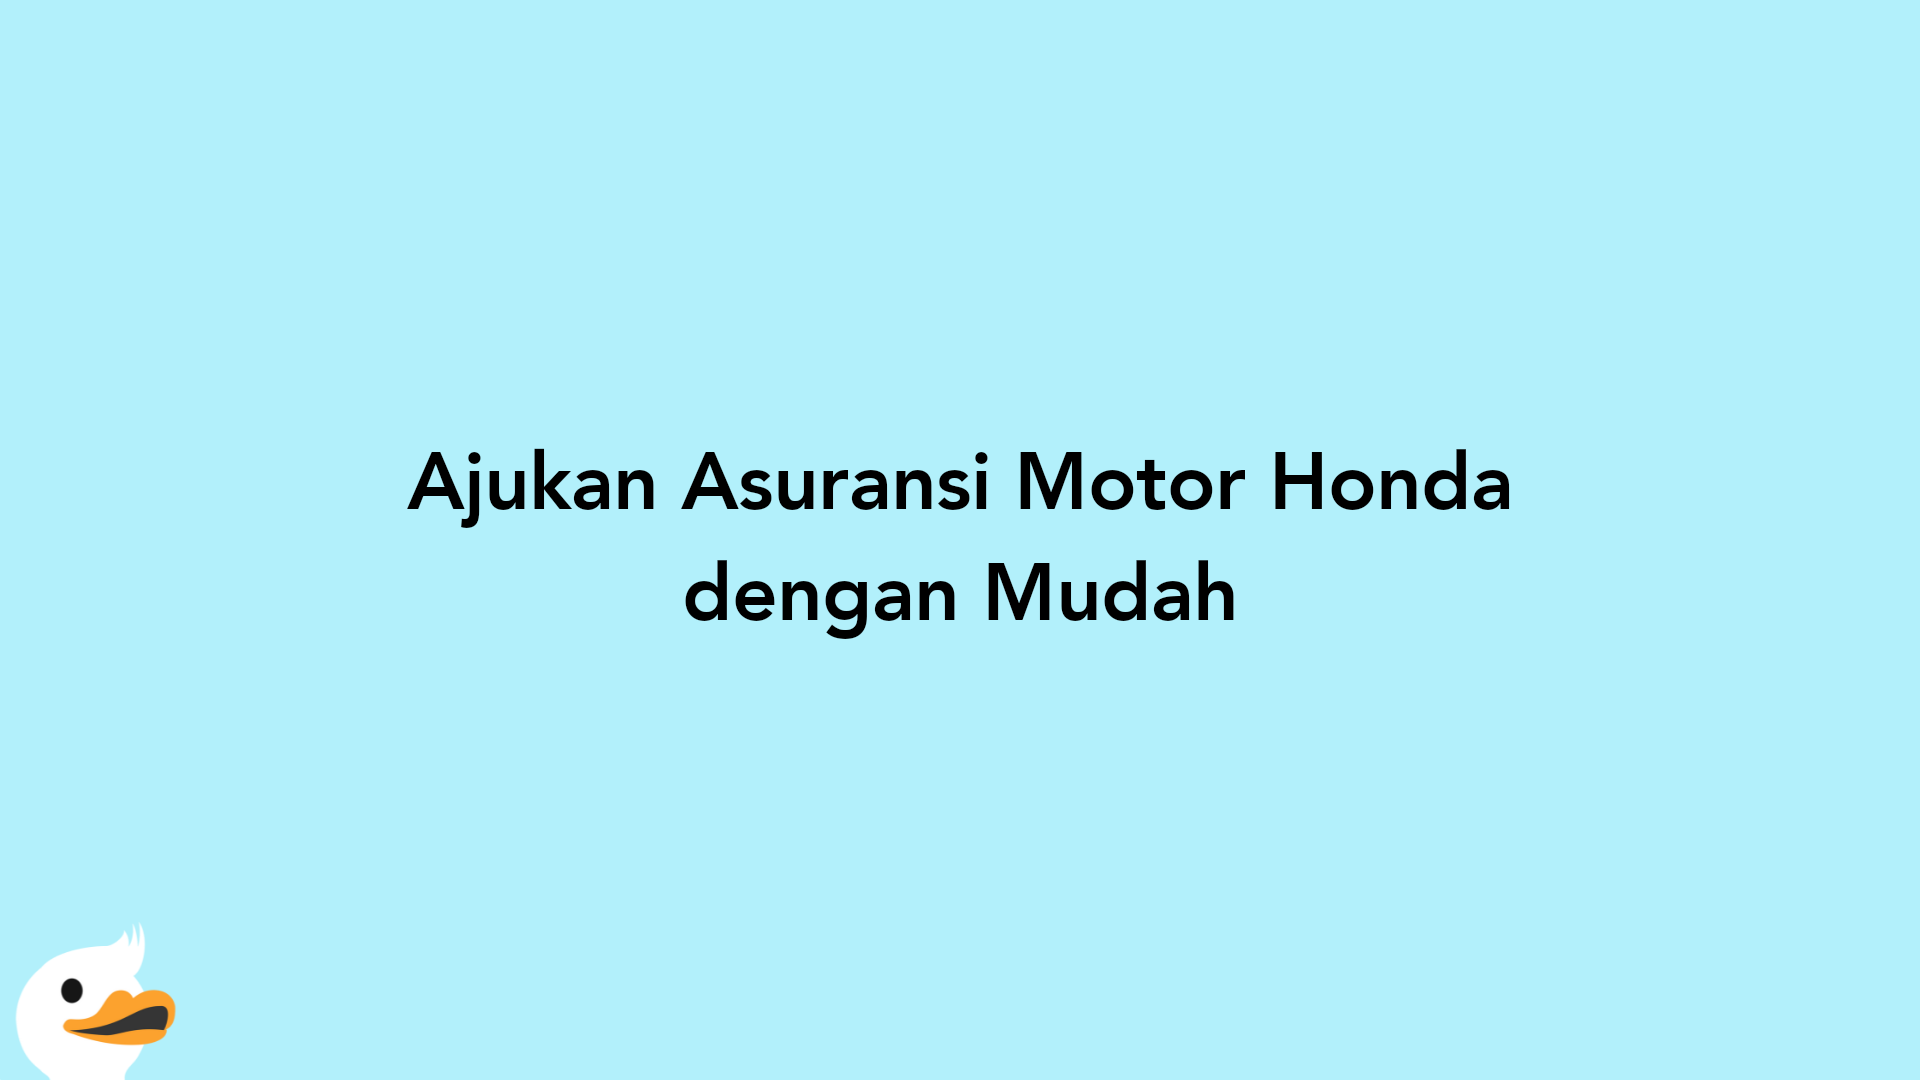 Ajukan Asuransi Motor Honda dengan Mudah